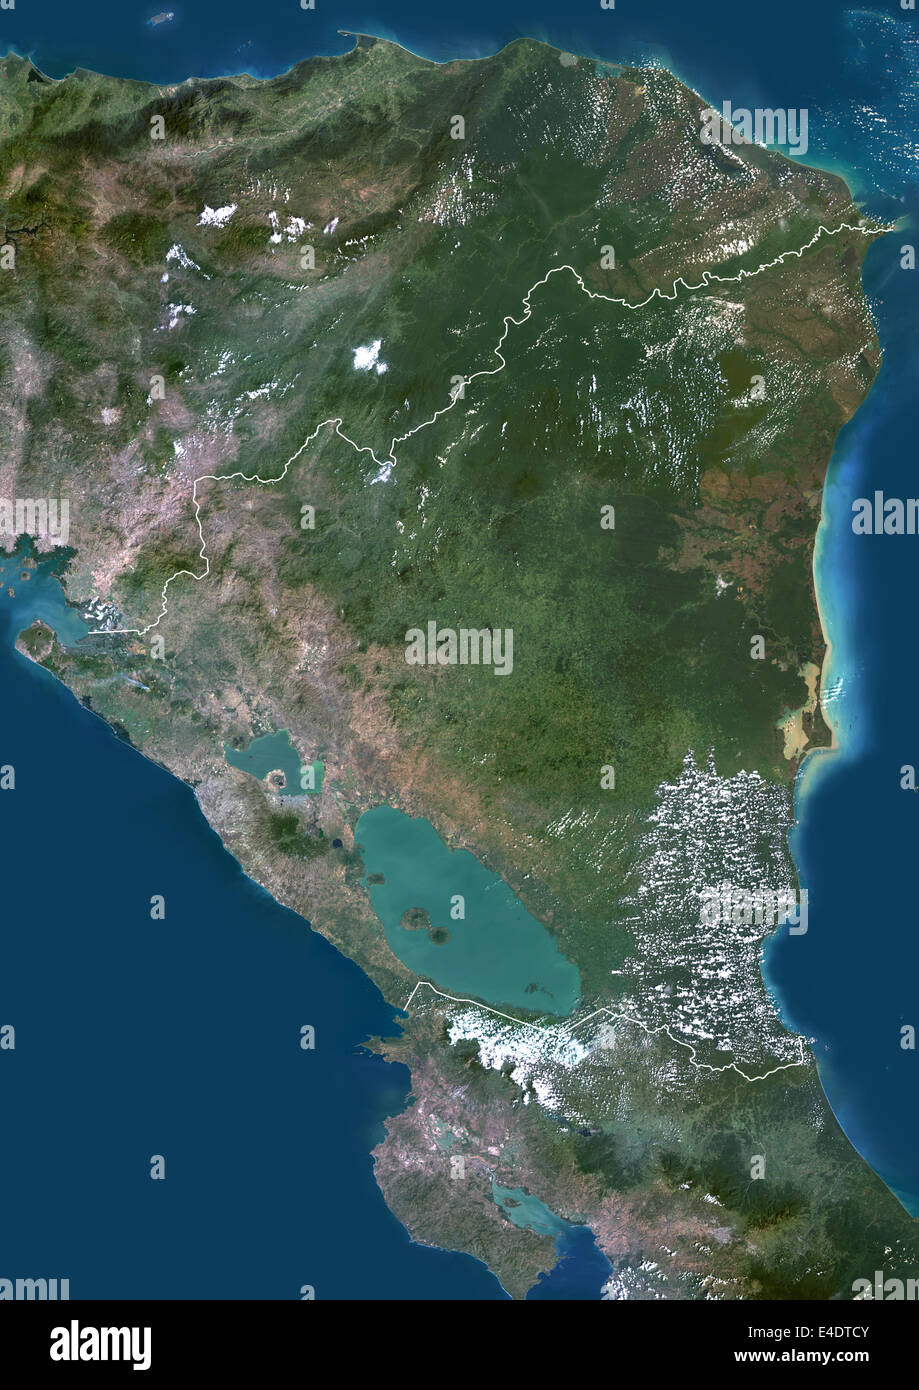 Mapa geografico de nicaragua fotografías e imágenes de alta resolución -  Alamy